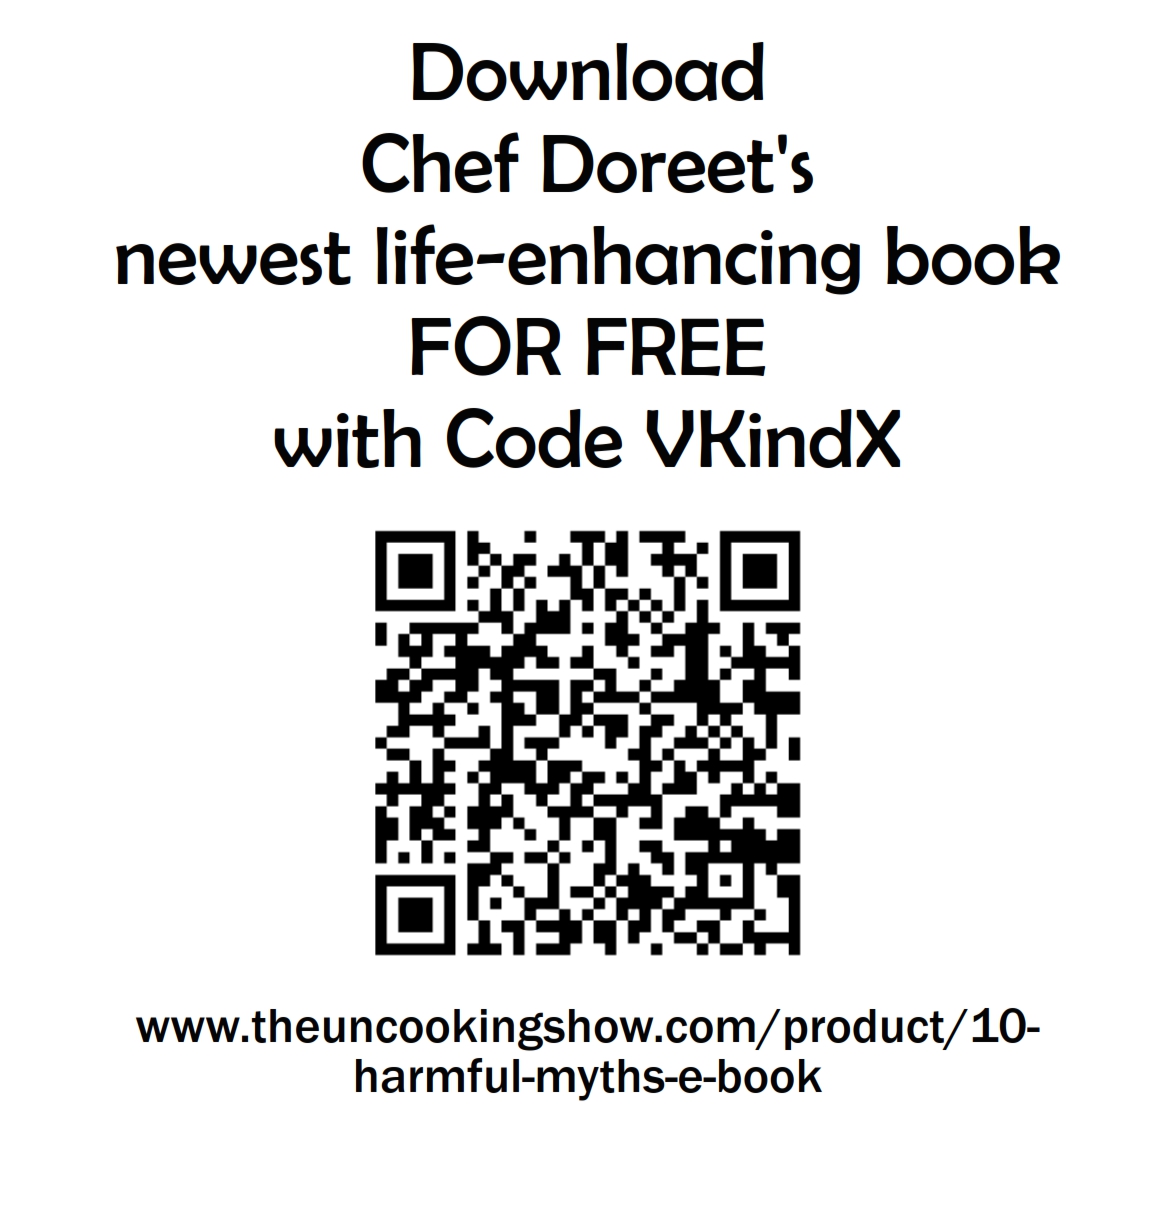 download my e-book